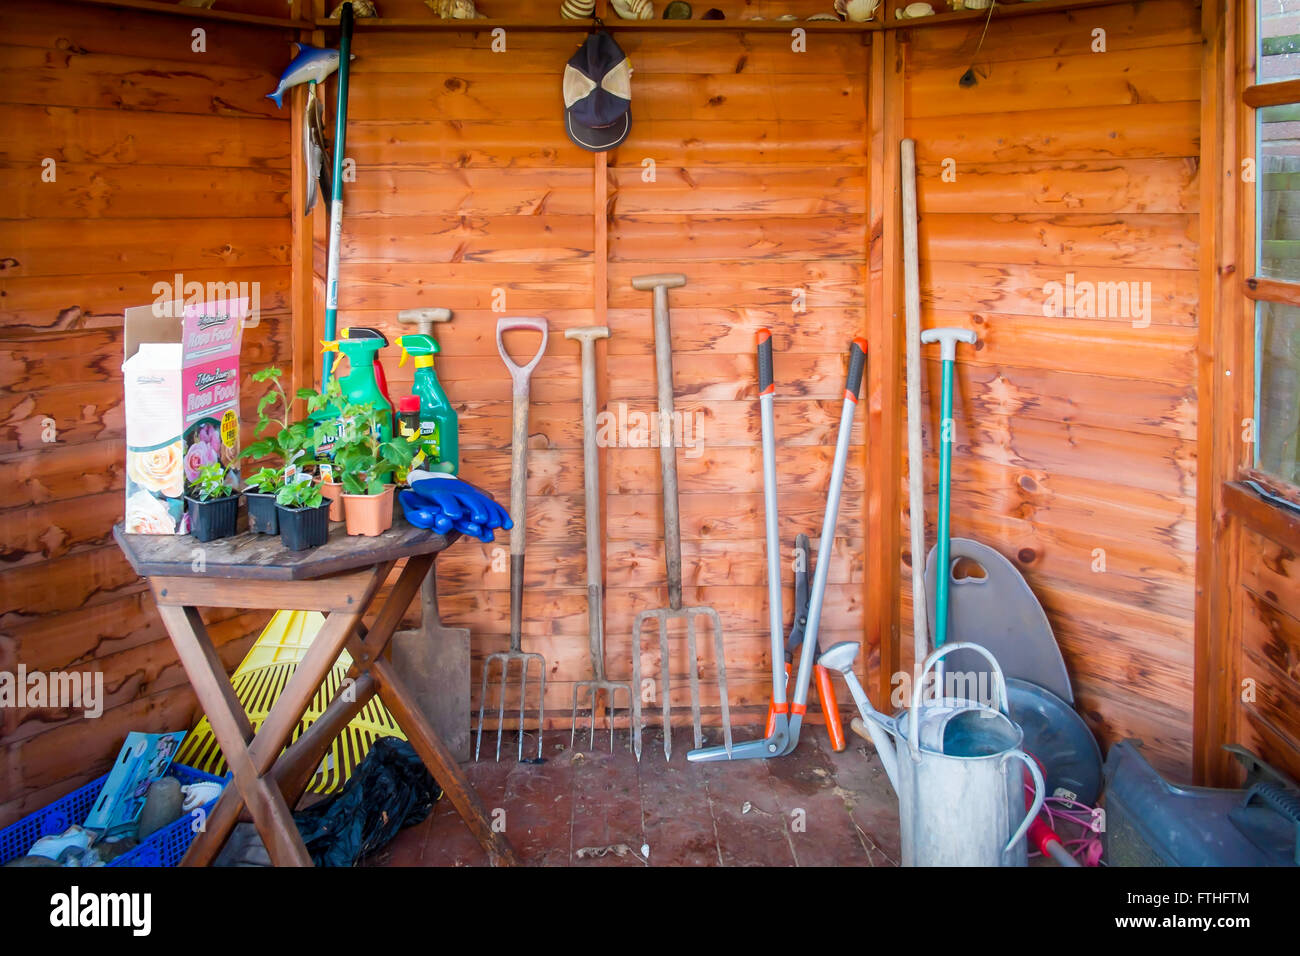 Gartenhaus-Interieur mit Gartenarbeit Werkzeuge eine Tabelle mit einer Gießkanne, Beetpflanzen, Dünger und Unkrautvernichter Stockfoto